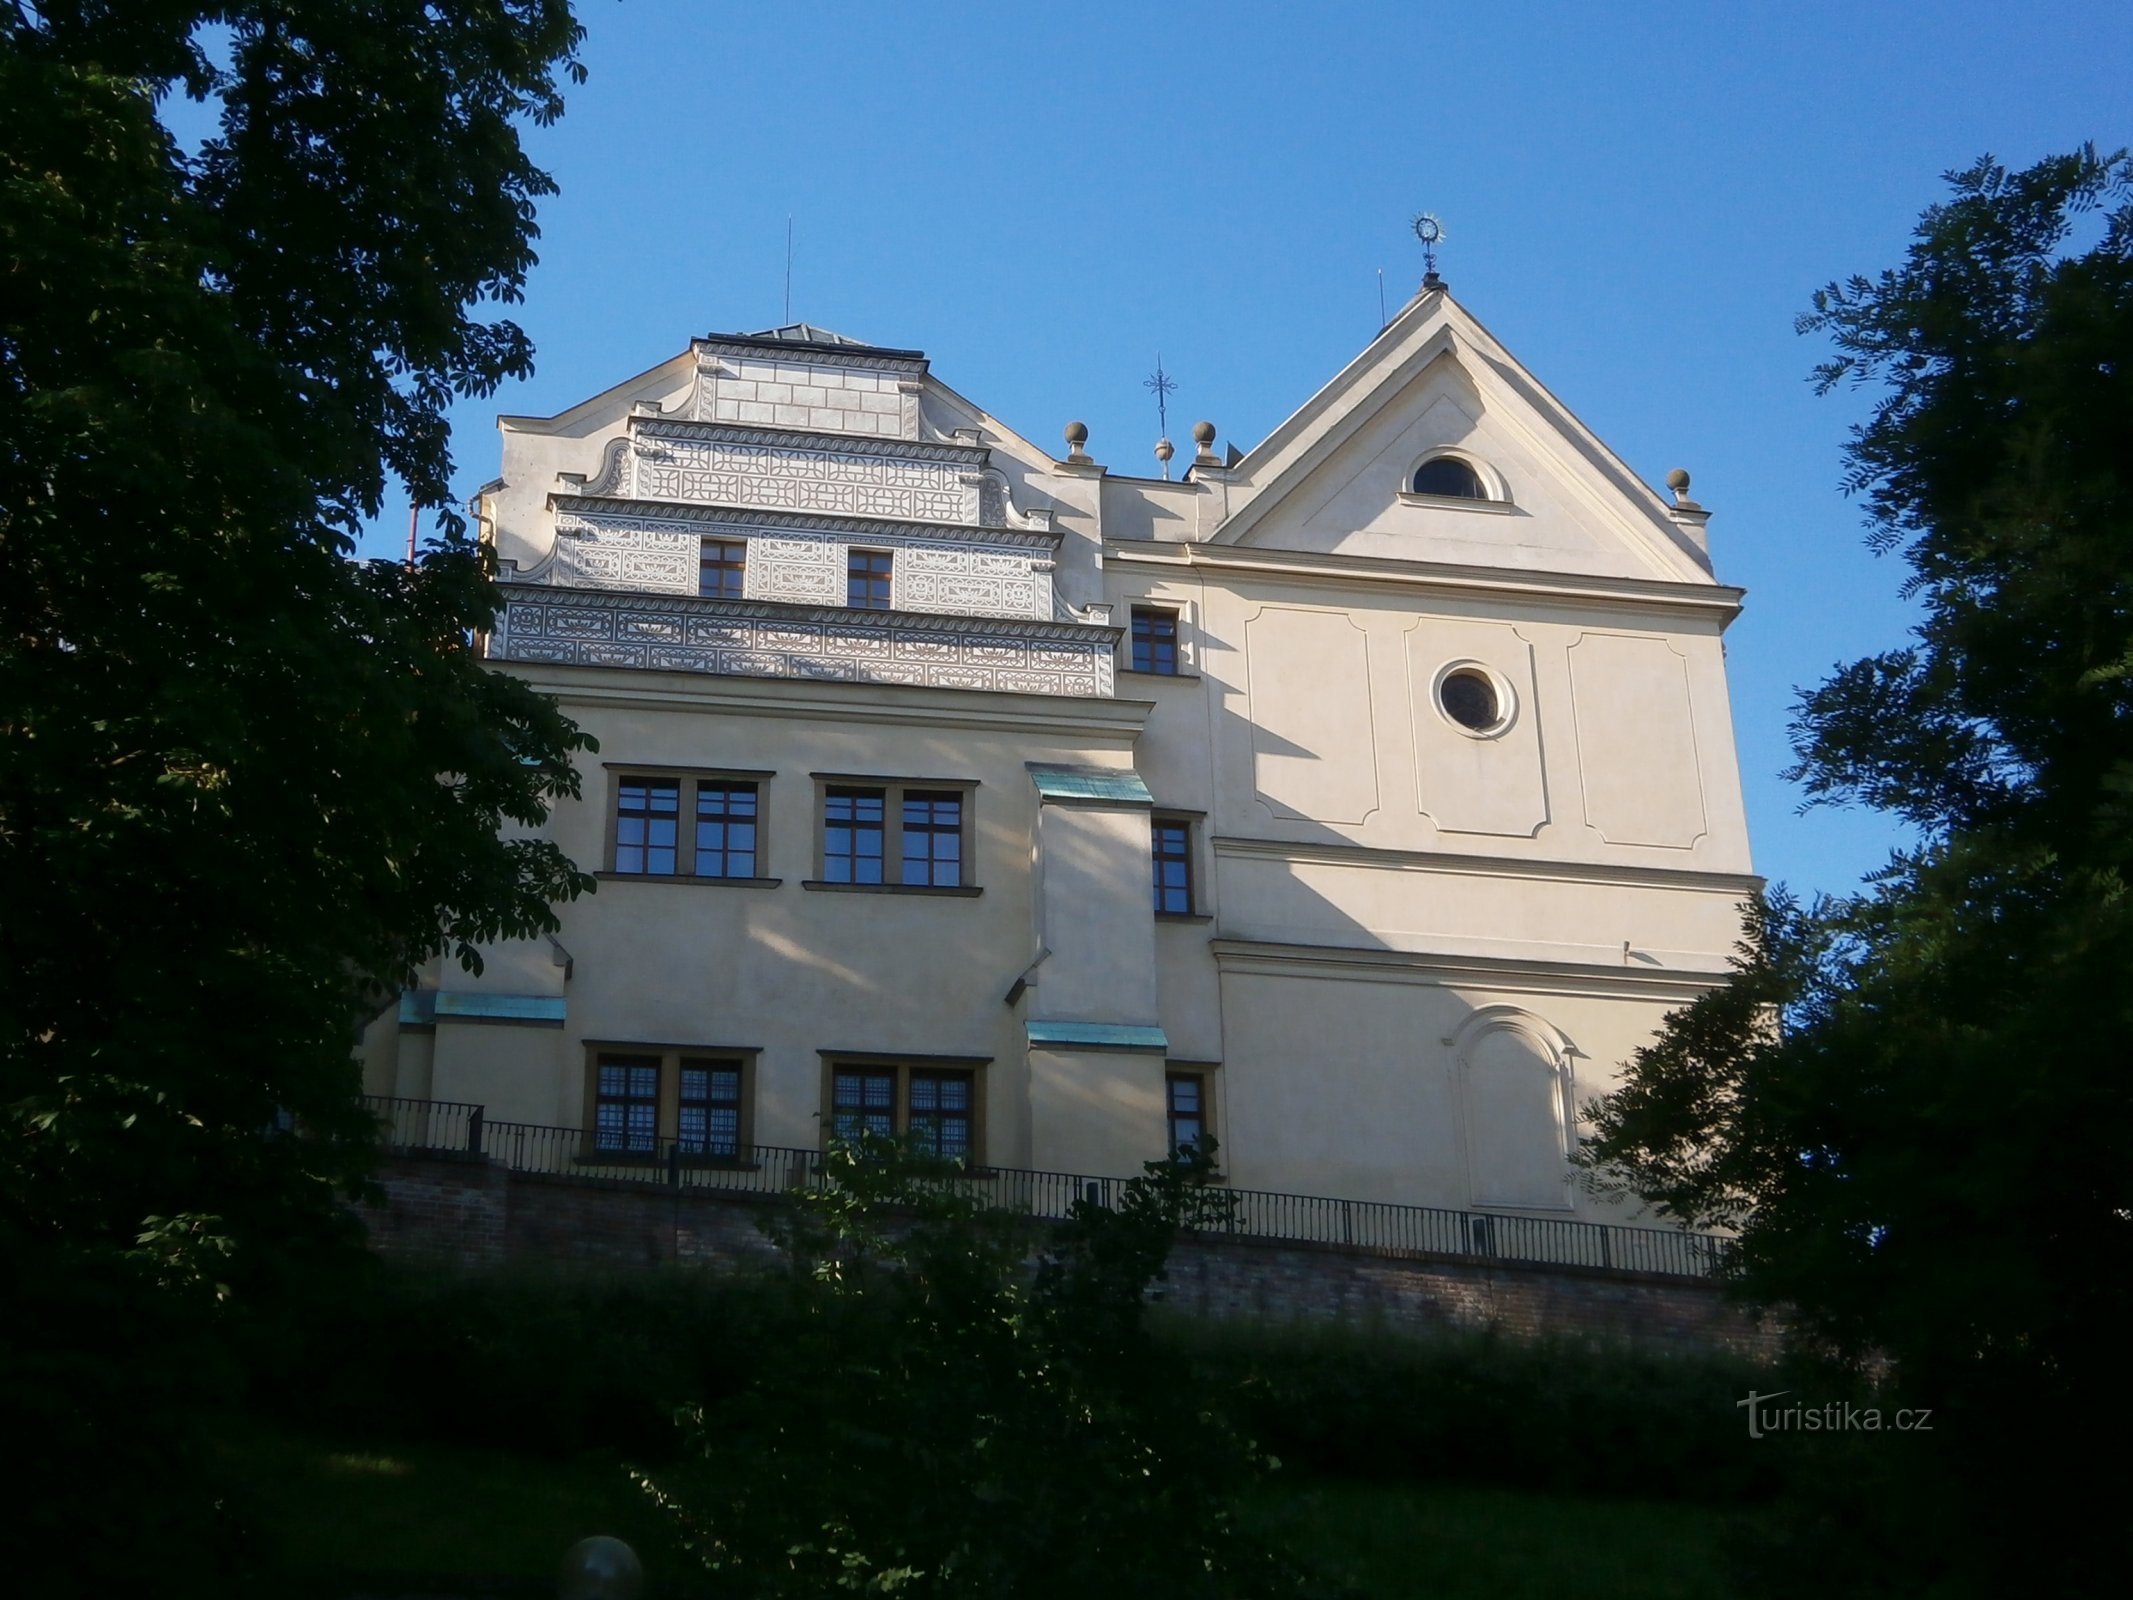 La casa del burgravio con la chiesa di S. Giovanni Nepomuceno (Hradec Králové, 2.7.2016 luglio XNUMX)